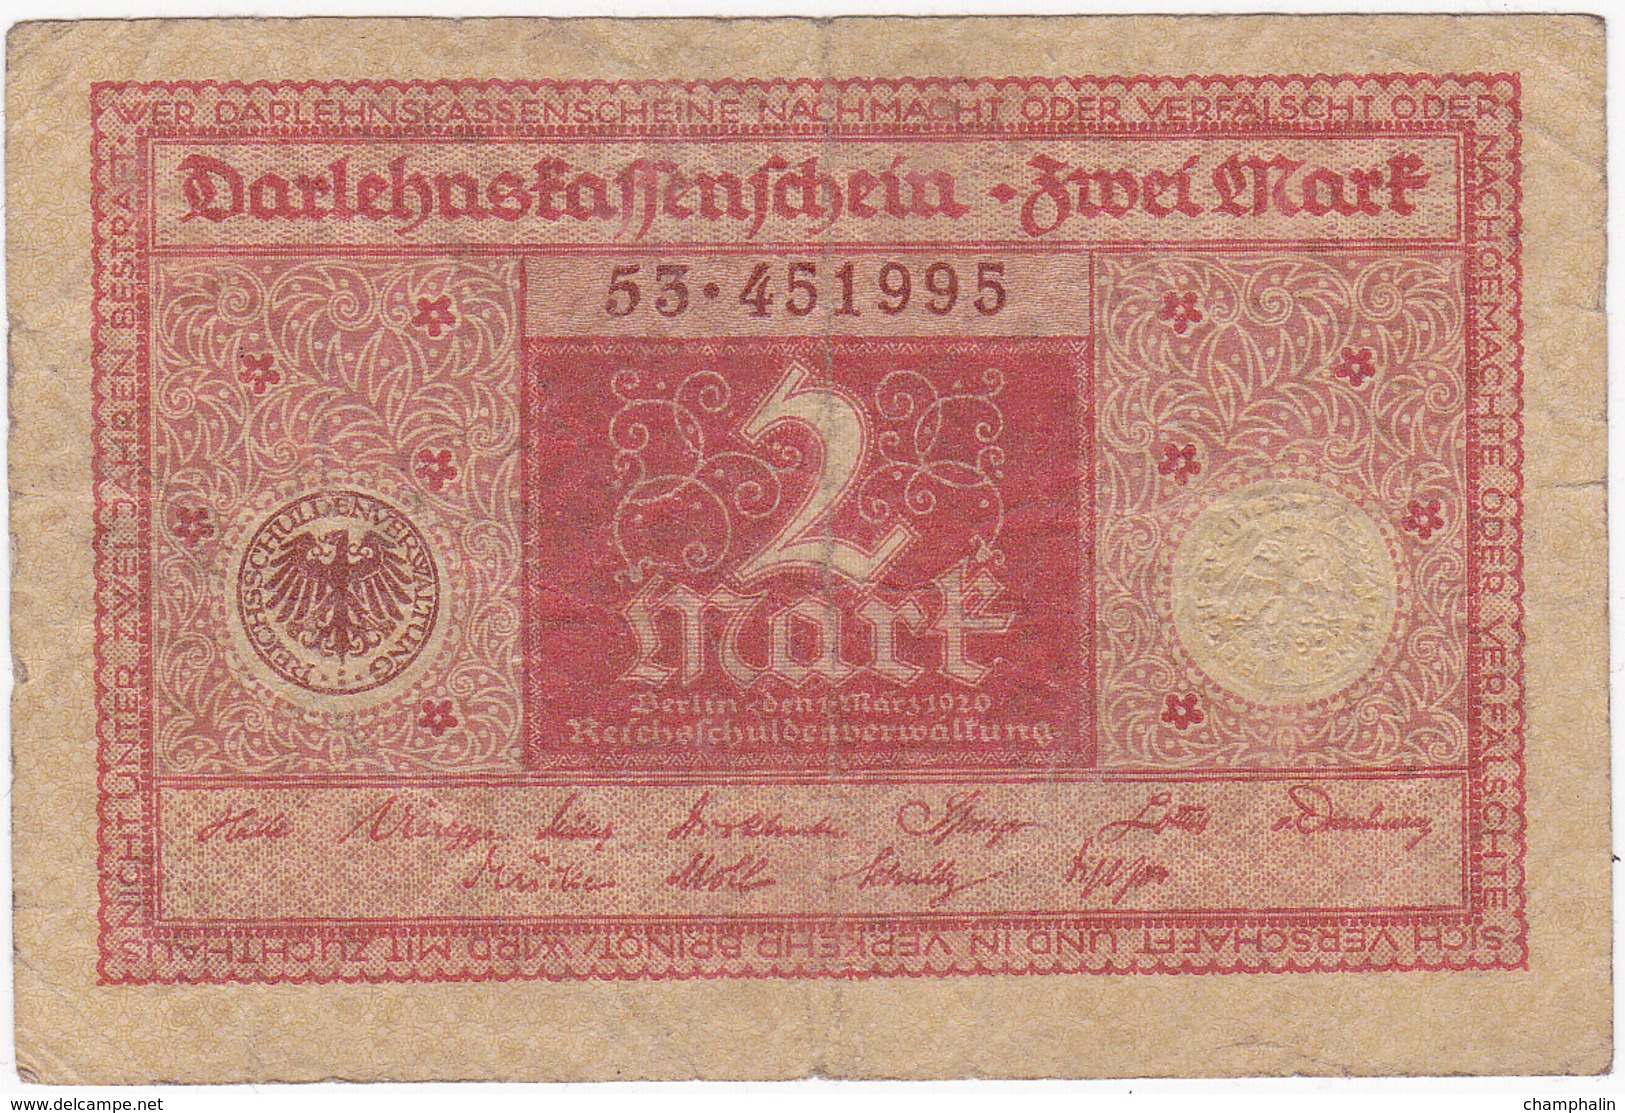 Allemagne - Billet De 2 Mark - 1er Mars 1920 - 2 Mark